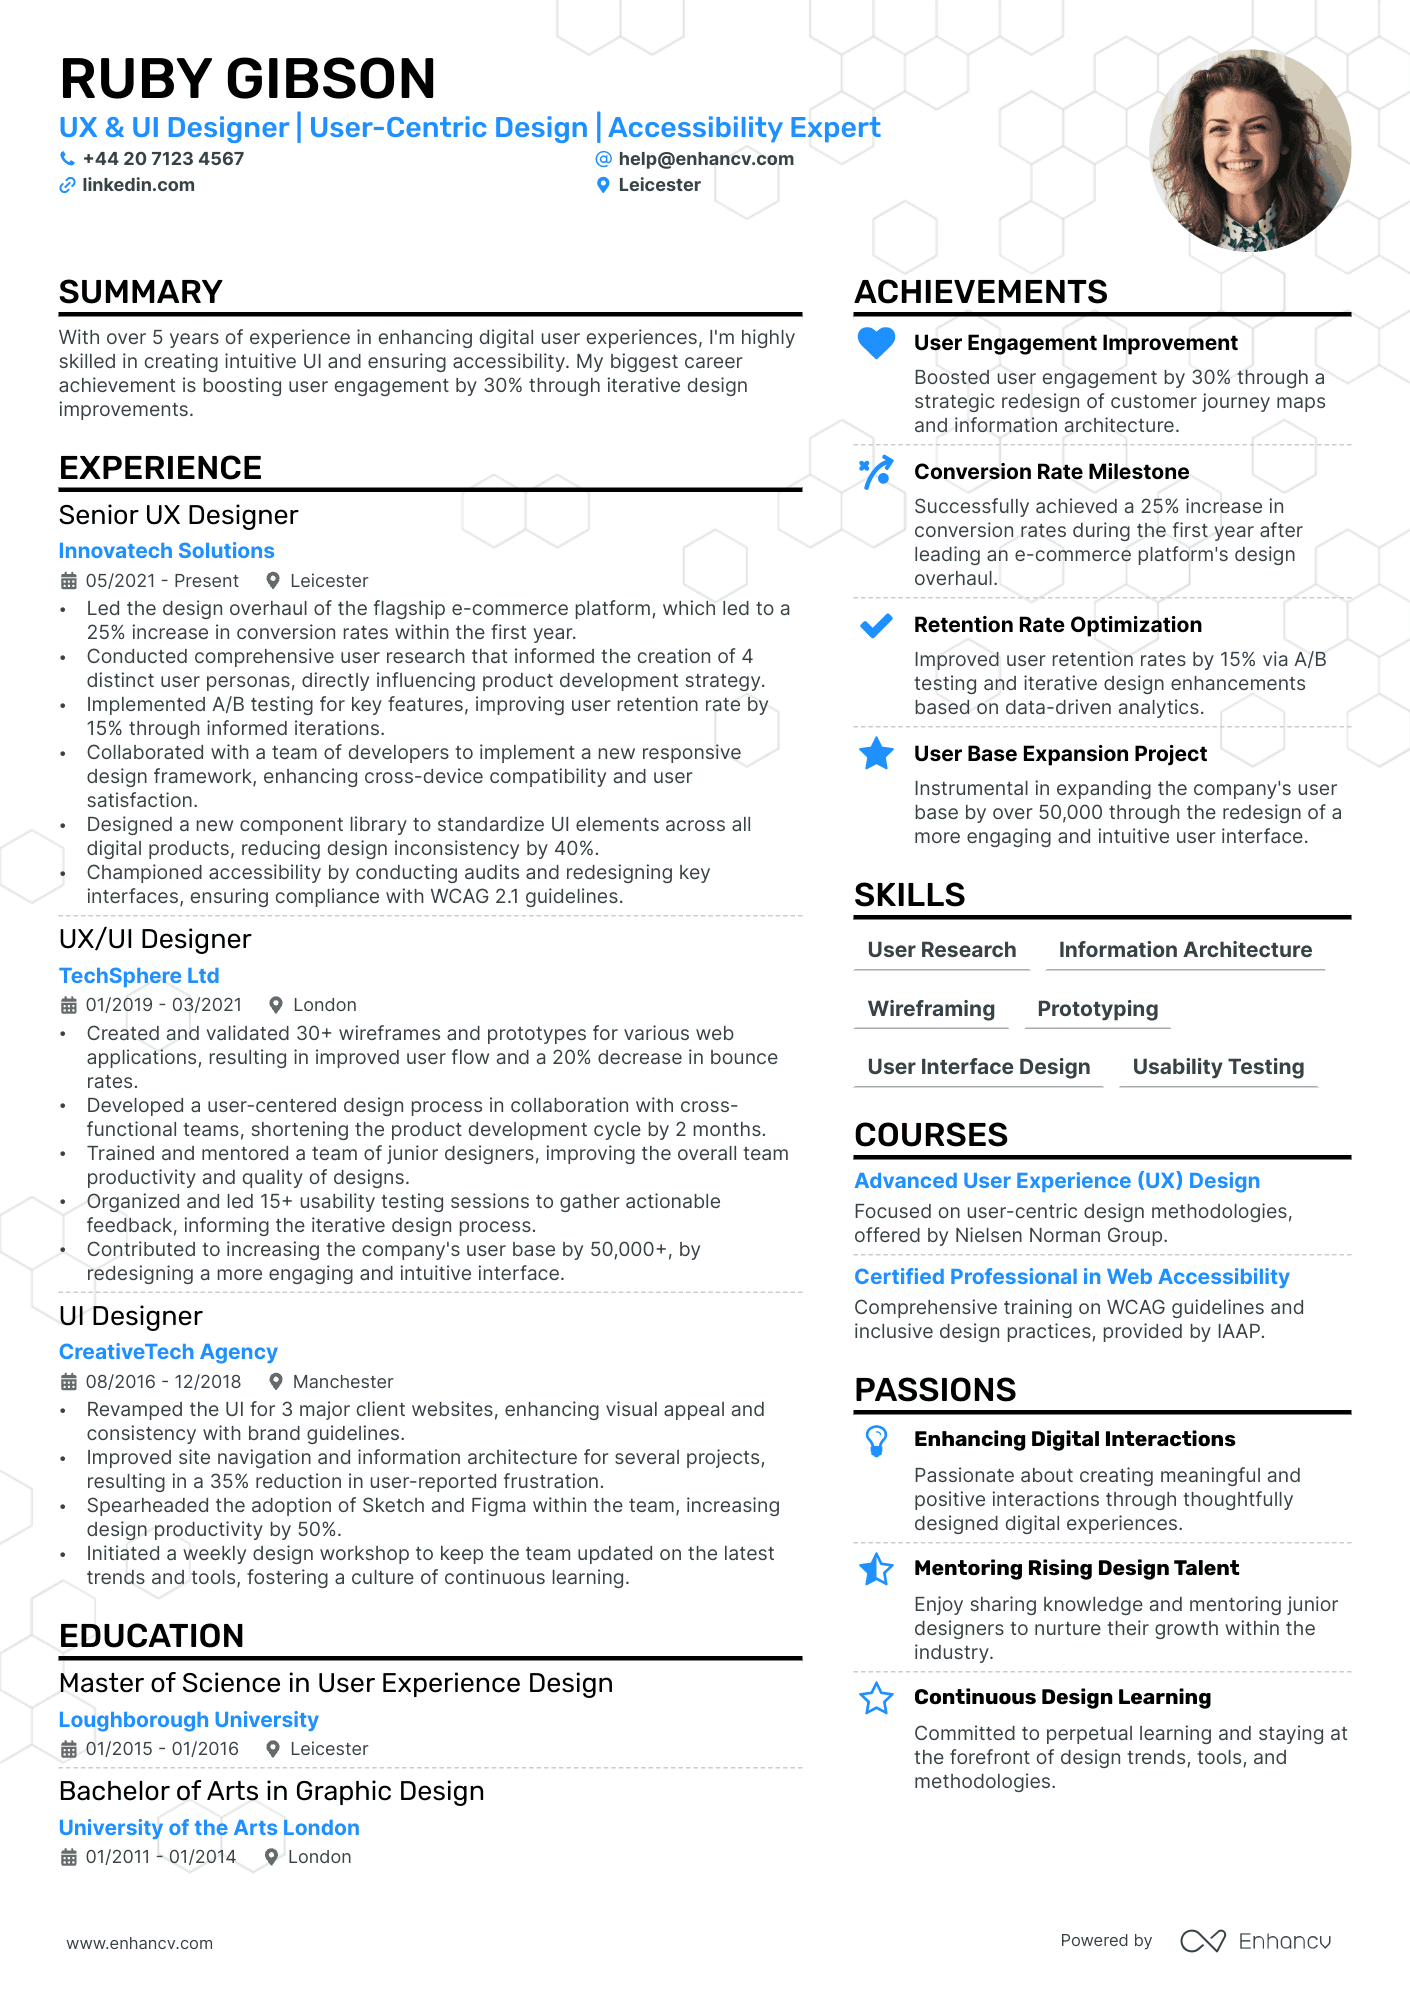 ux ui designer resume example